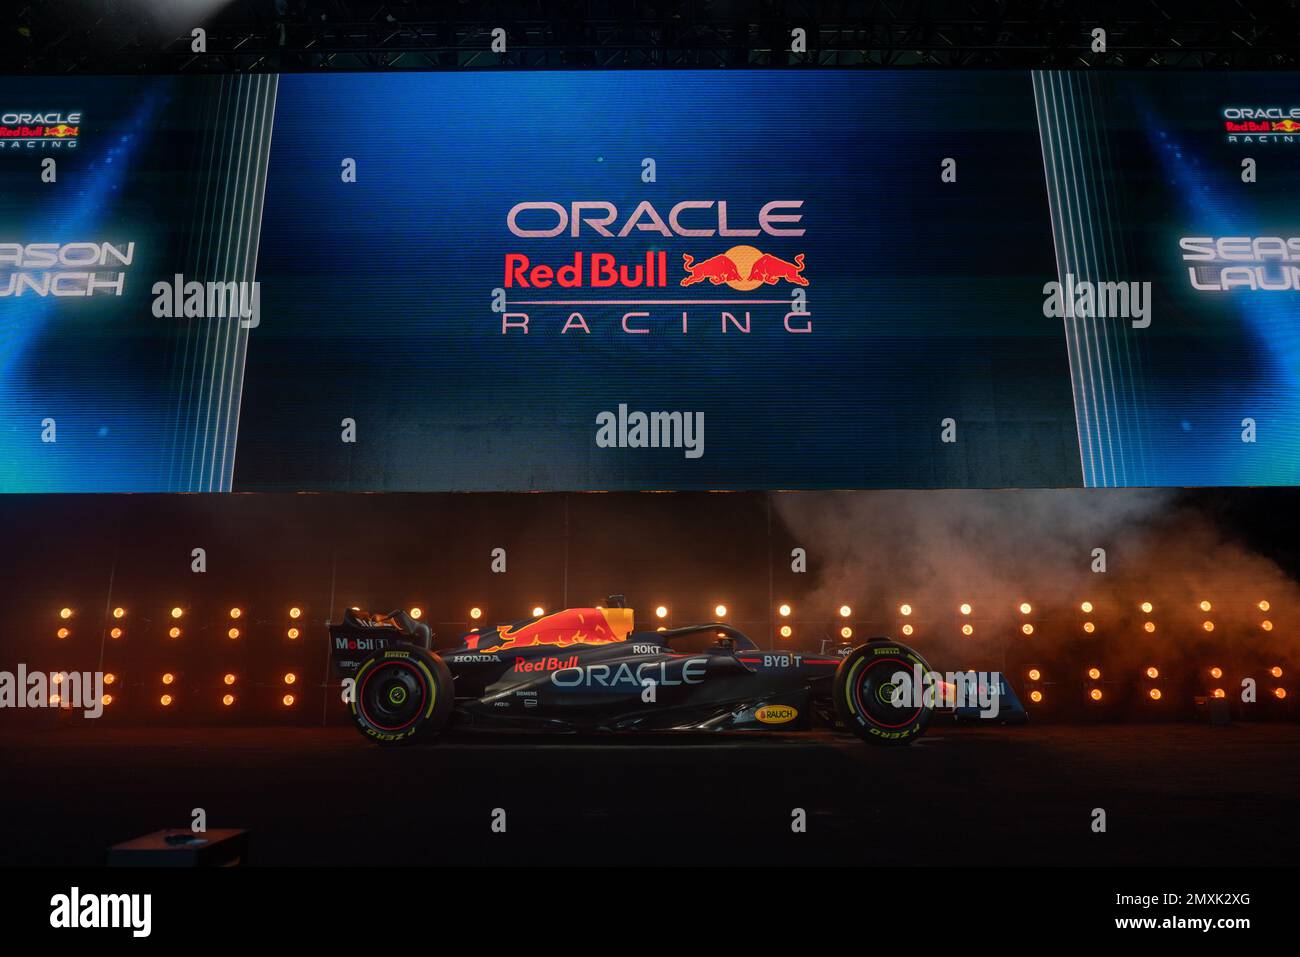 Nueva York, EE.UU. 03rd de febrero de 2023. El vehículo Oracle Red Bull Racing RB 19 se revela en el lanzamiento de la revelación de Oracle Red Bull Racing en el lanzamiento de la revelación de Oracle Red Bull Racing en la ciudad de Nueva York el viernes 3 de febrero de 2023. Después de más de dos décadas, Ford anunció que regresará a la Fórmula 1. Ford y Oracle Red Bull Racing están estableciendo una asociación técnica estratégica a largo plazo para el desarrollo de una unidad de potencia híbrida de próxima generación a partir de la temporada 2026 de Fórmula 1. Foto por Allan Maldonado/UPI Crédito: UPI/Alamy Live News Foto de stock